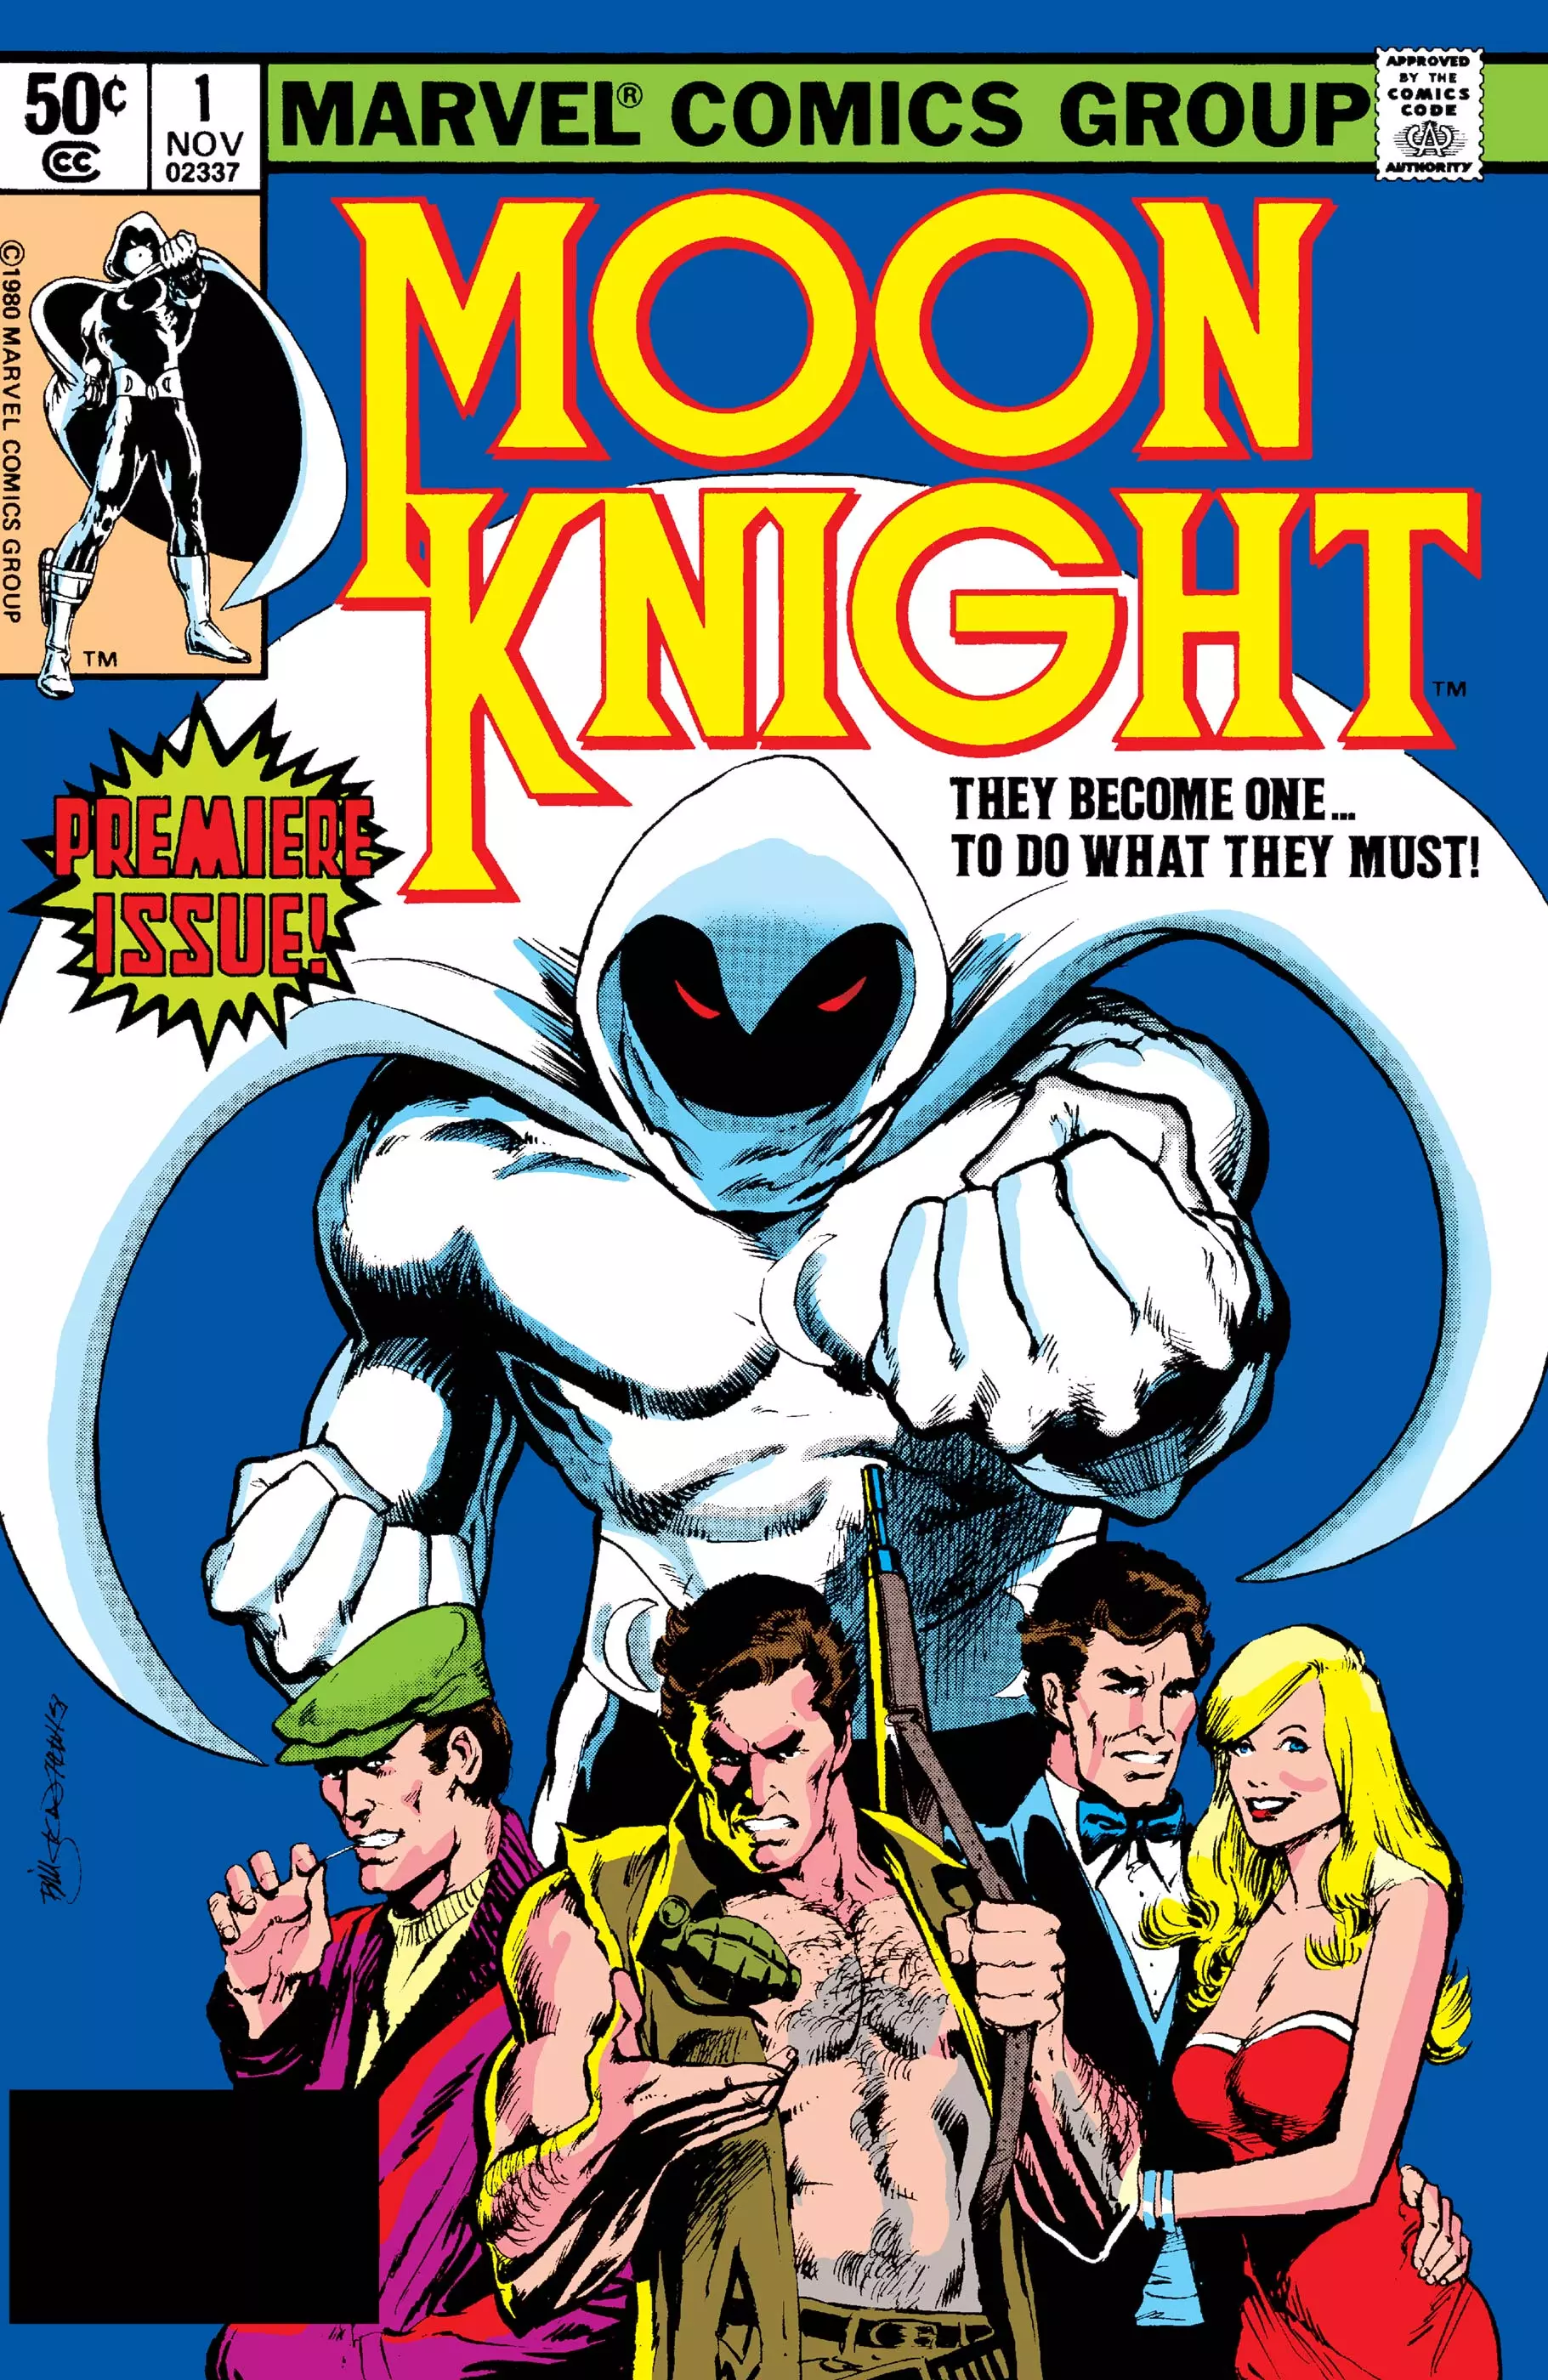 Moon Knight #1 1st appearance of Bushman